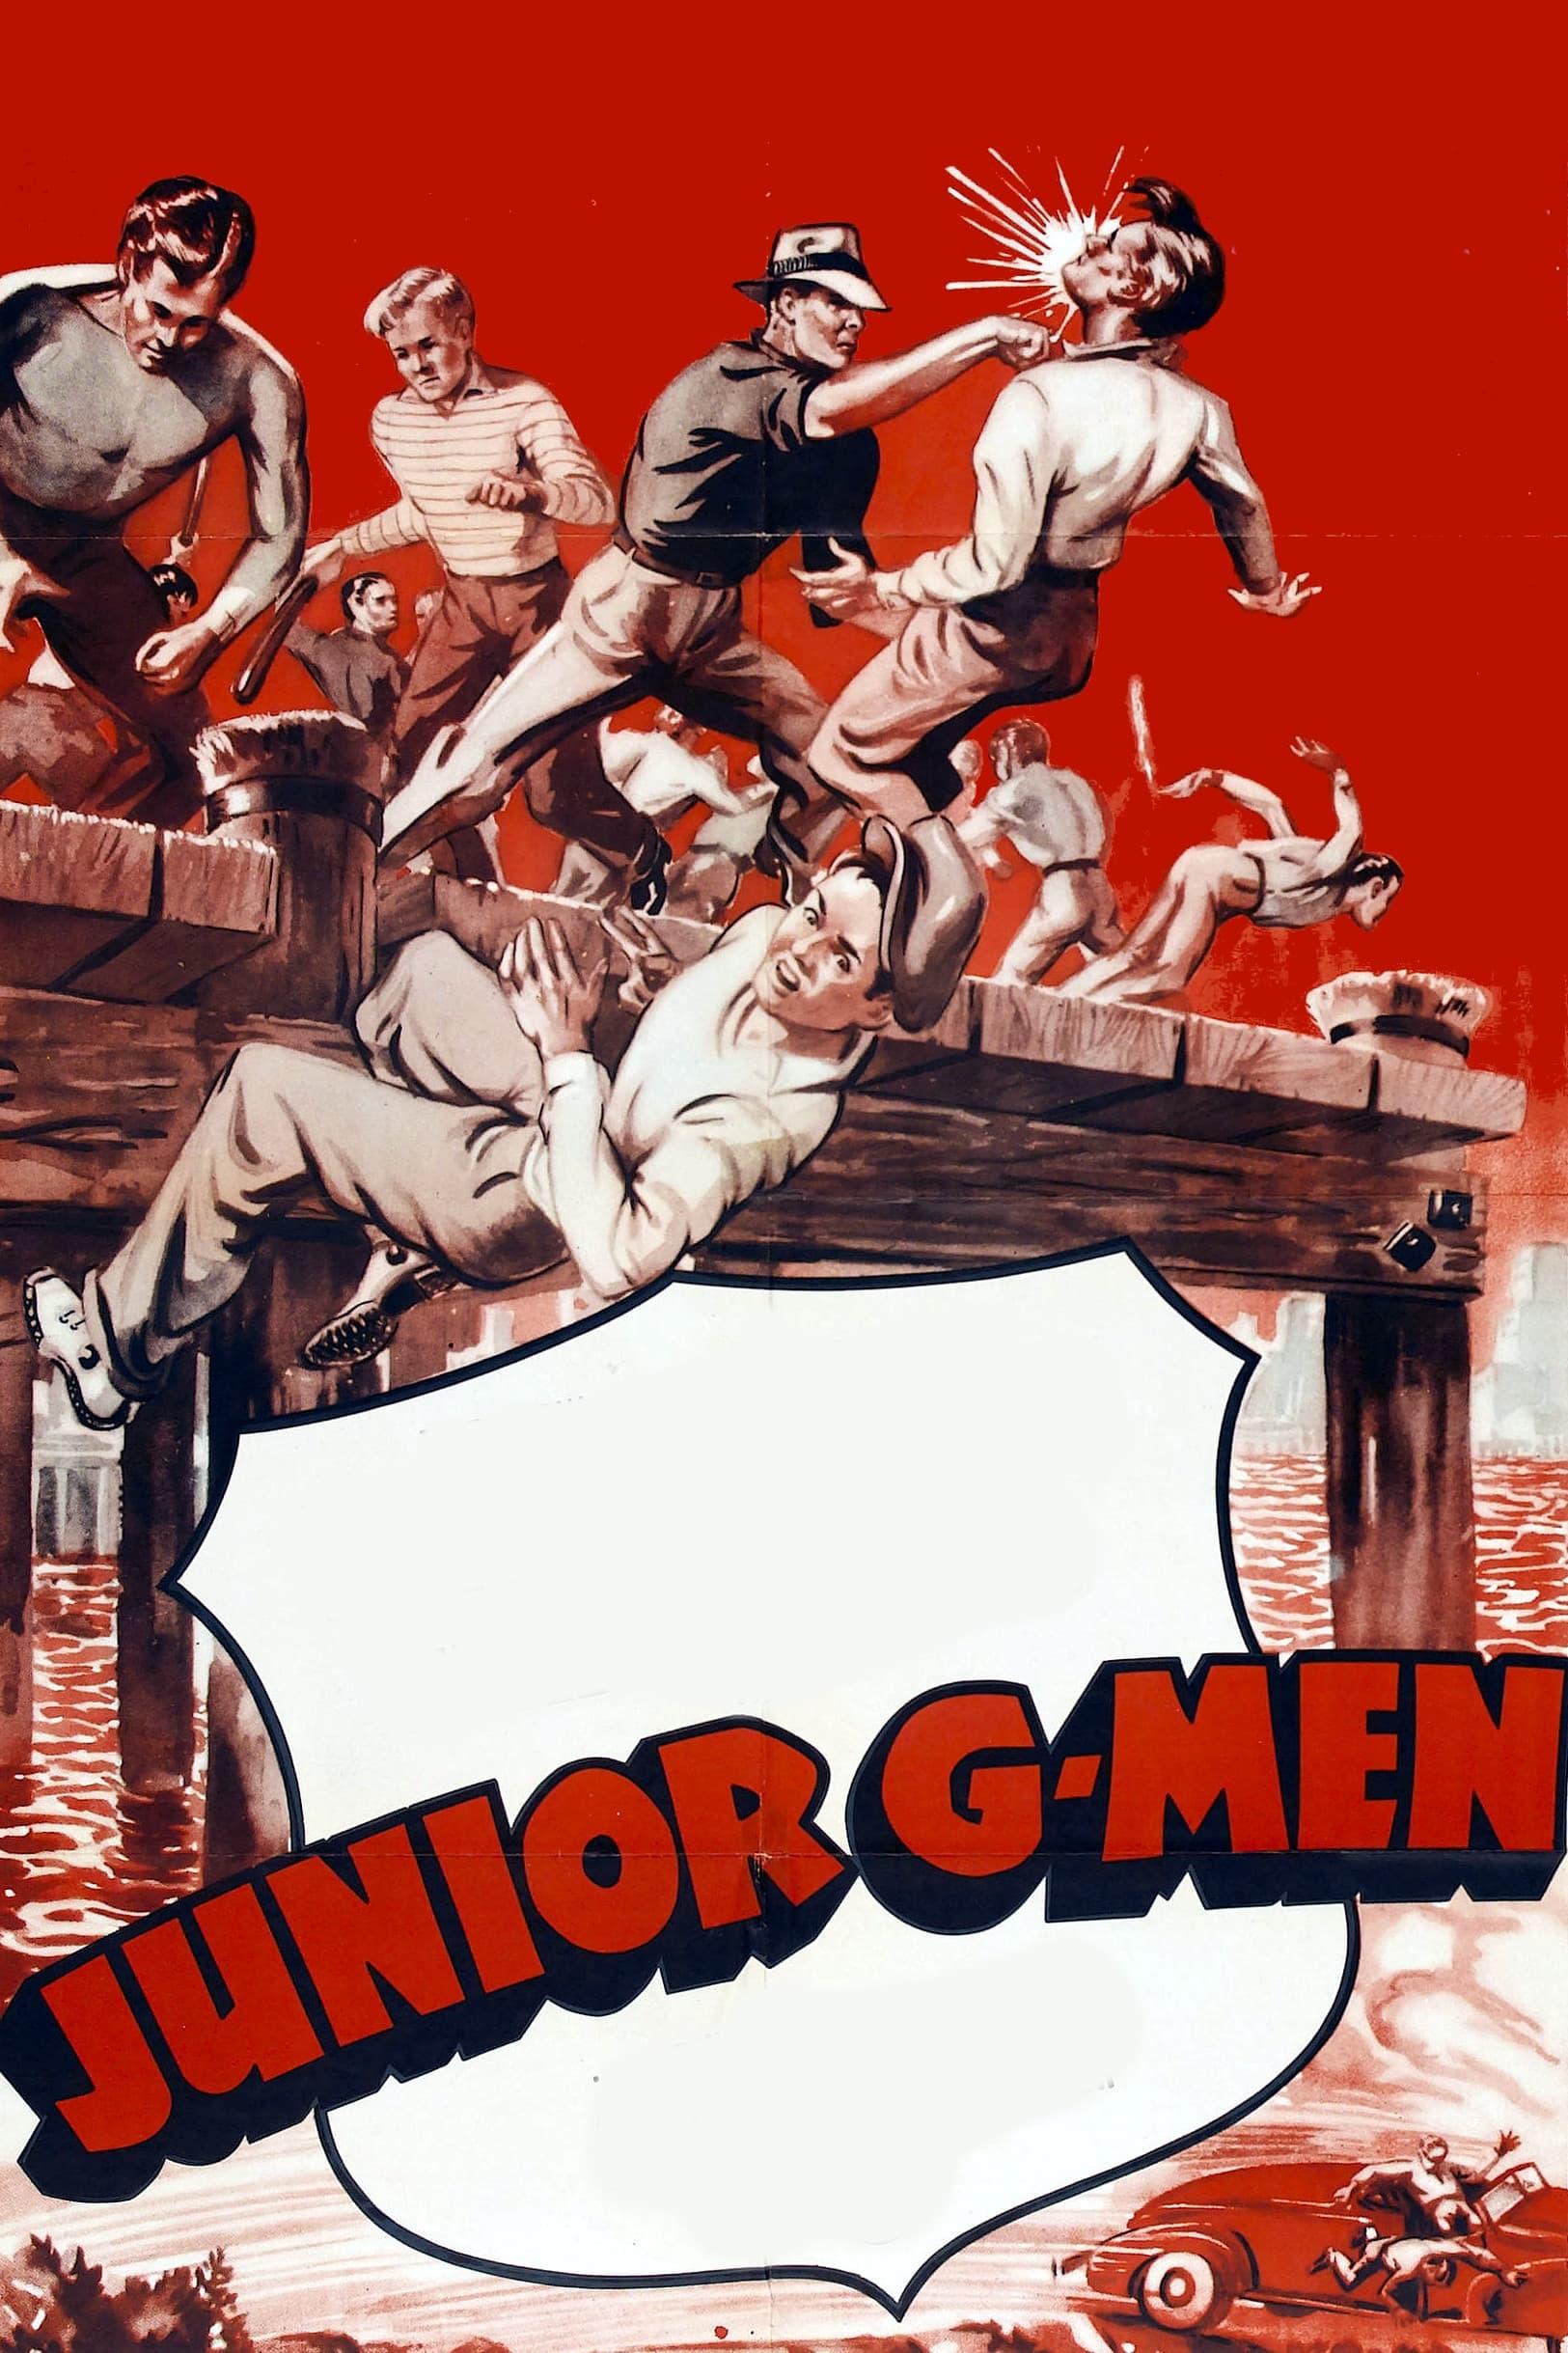 Junior G-Men poster